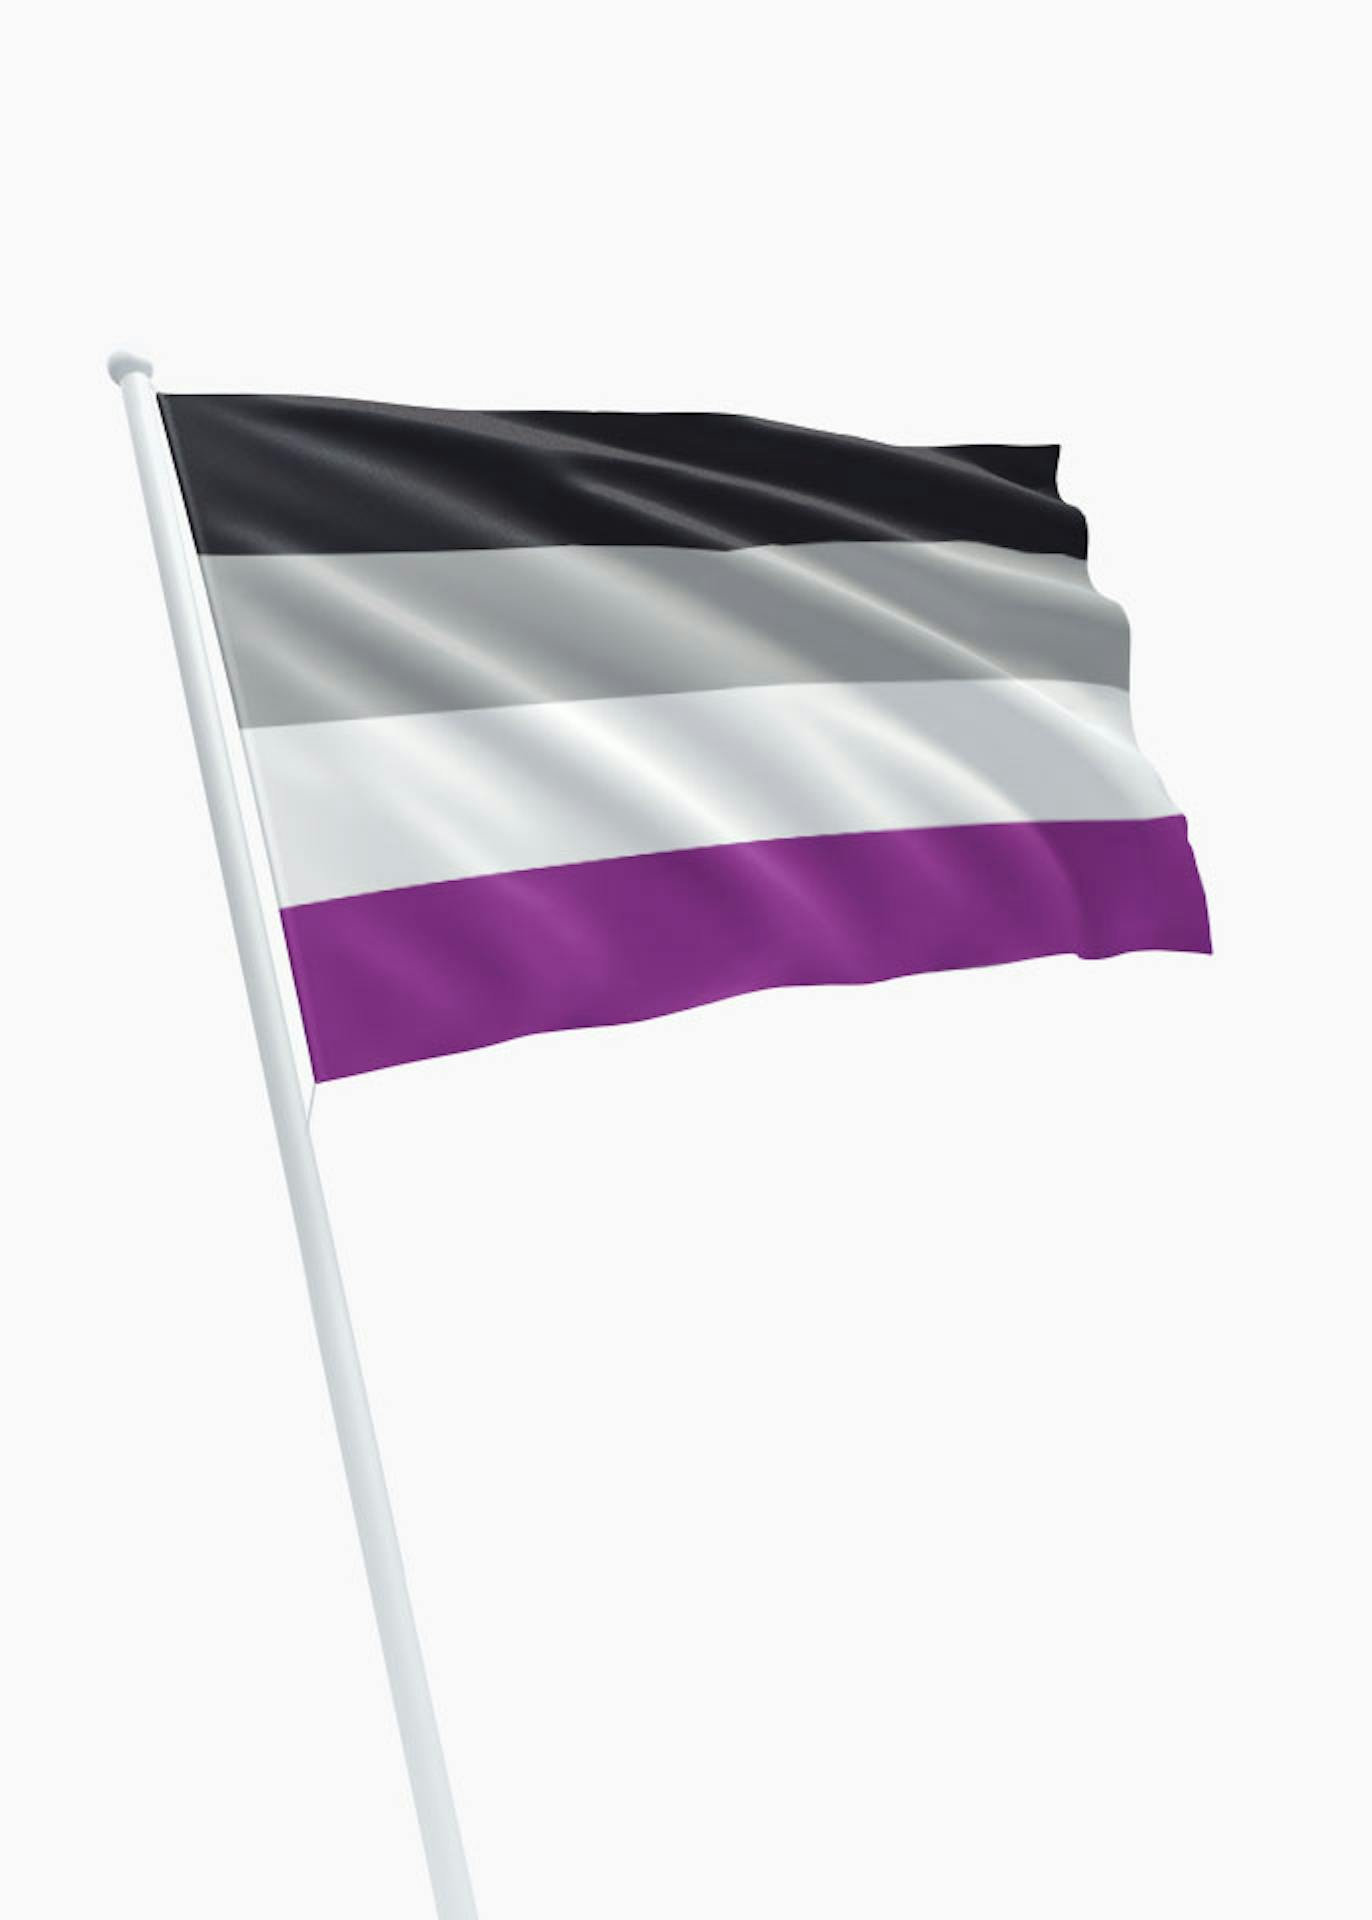 Vouwen blijven Kruiden A-sexual vlag - online bestellen - DVC